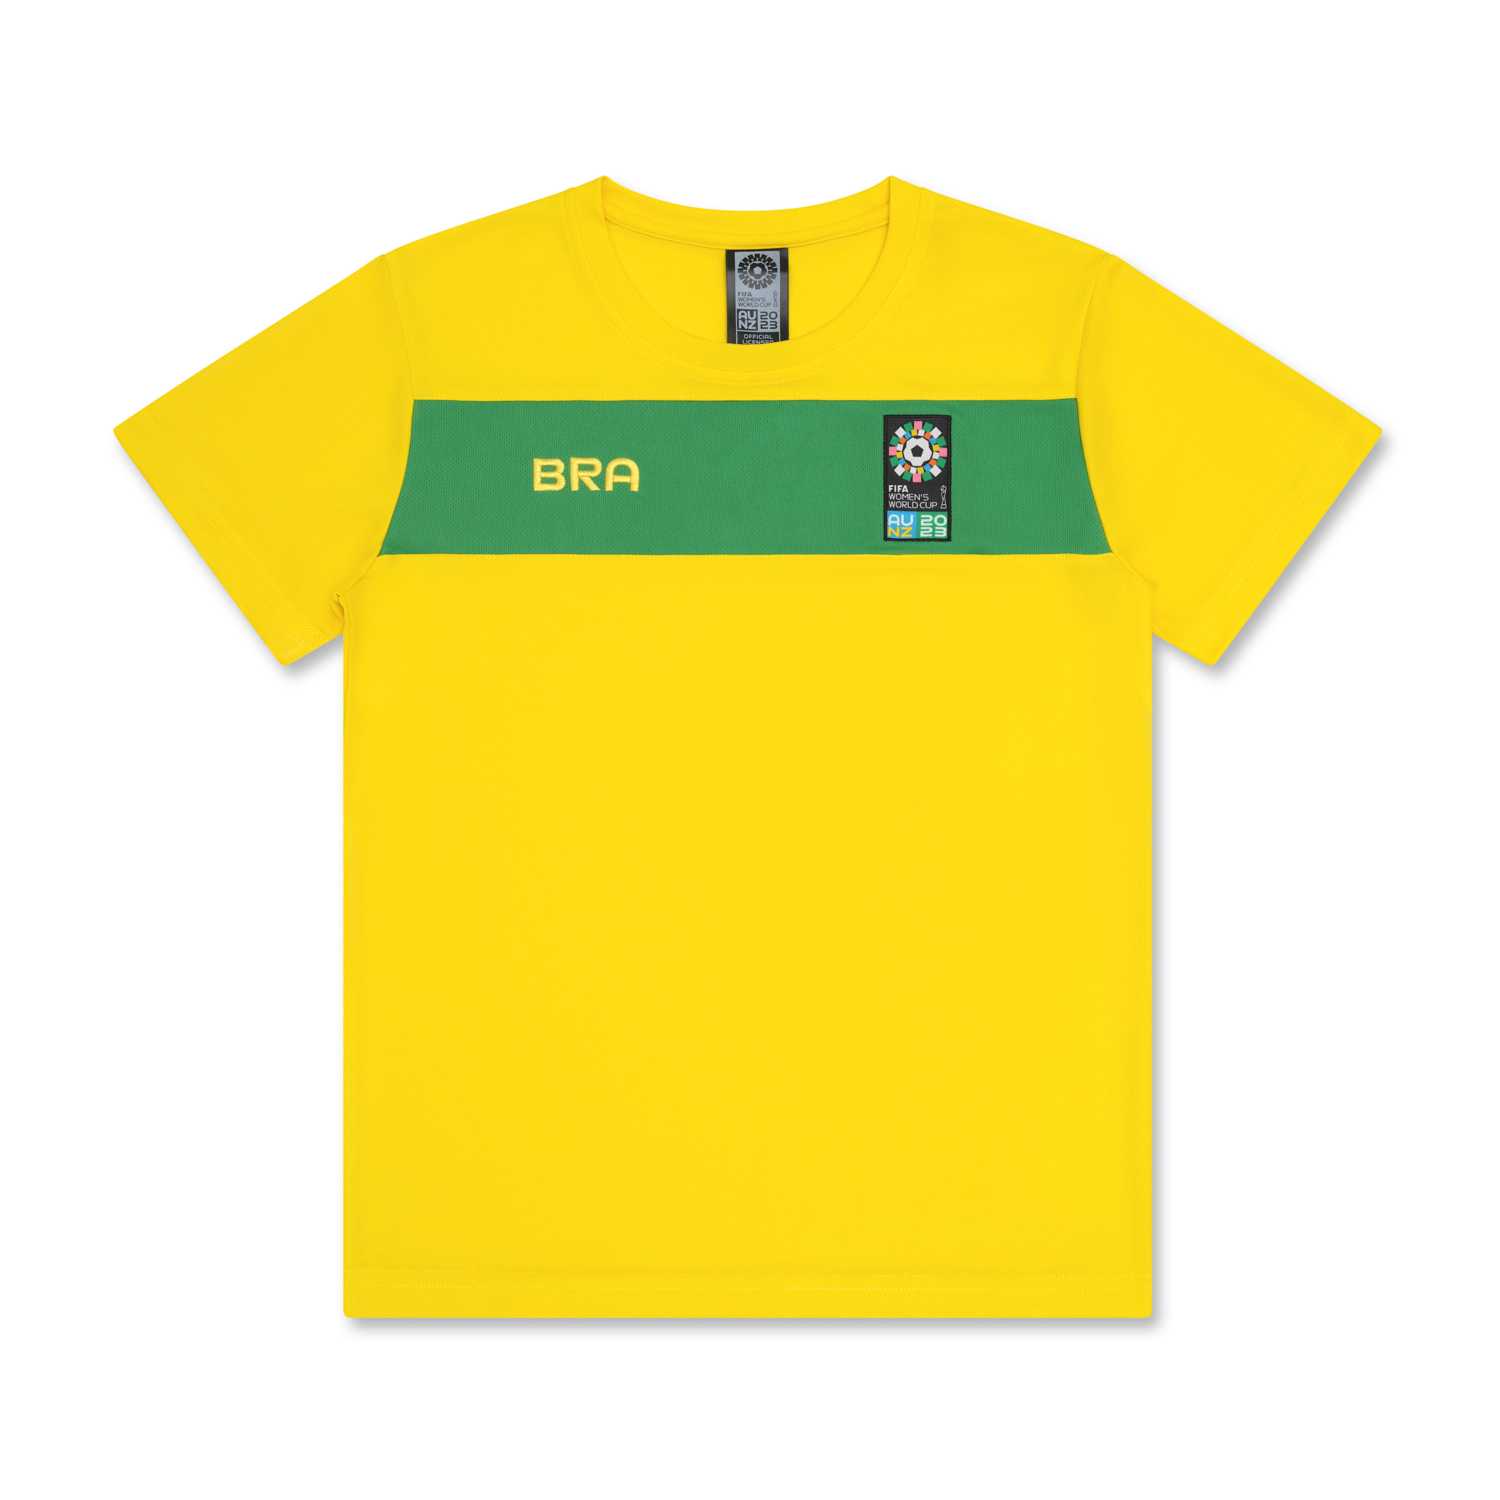 Brazil Women's World Cup 2023 Yellow T-Shirt - Unisex